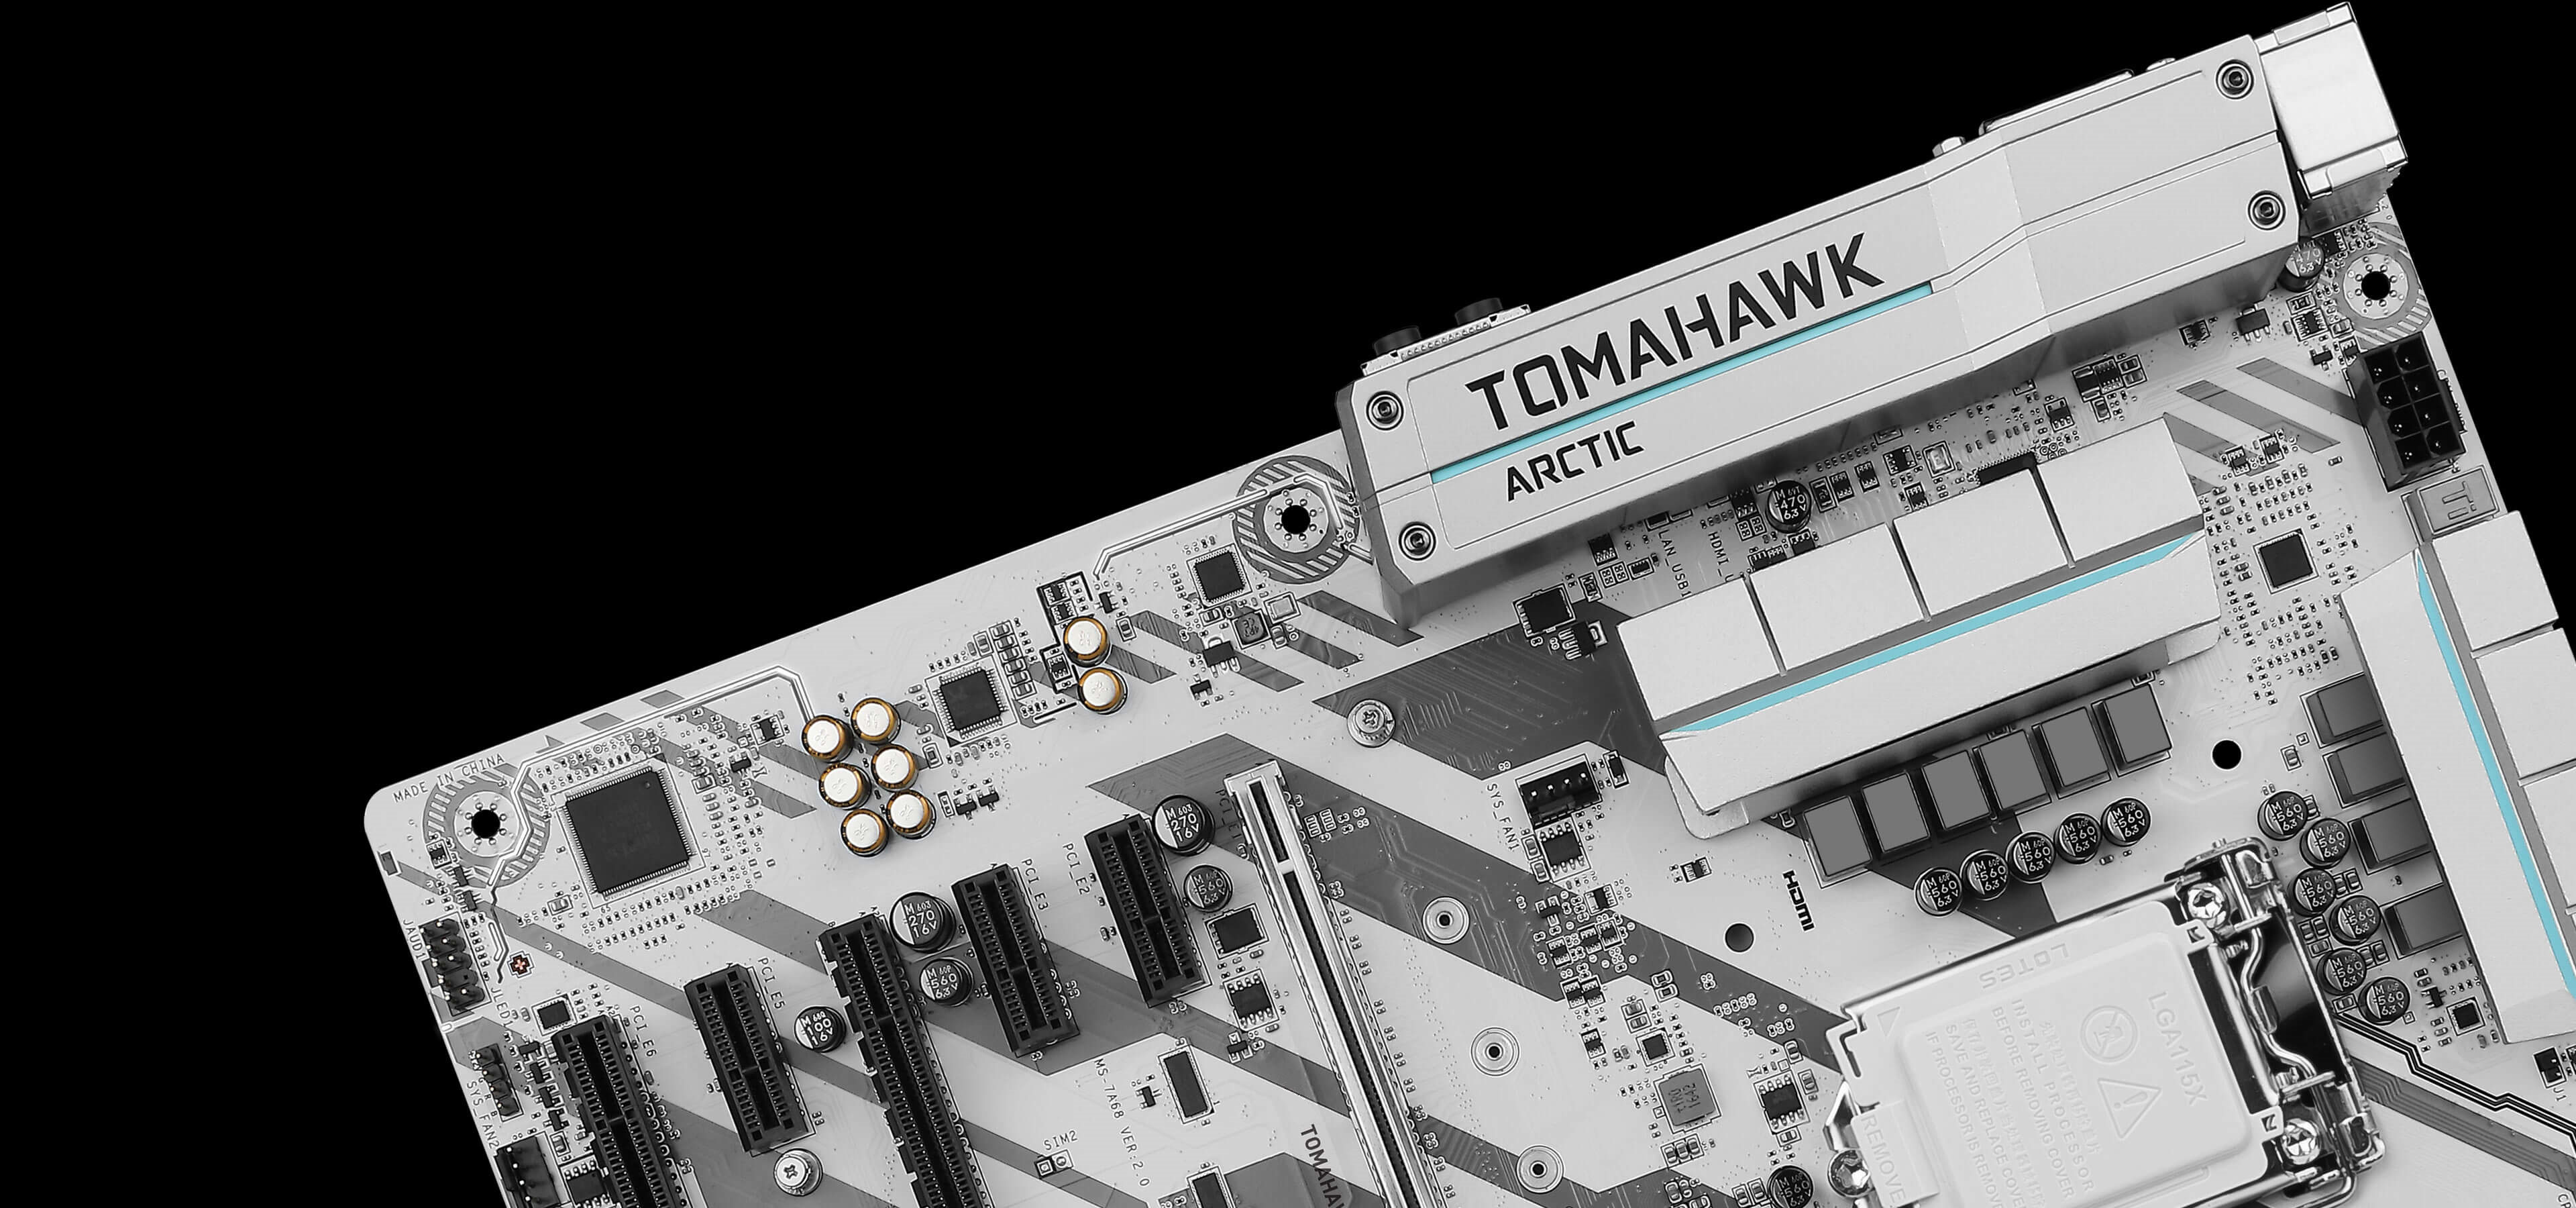 MSI Z270 Tomahawk Arctic Socket LGA1151 Gaming Motherboard